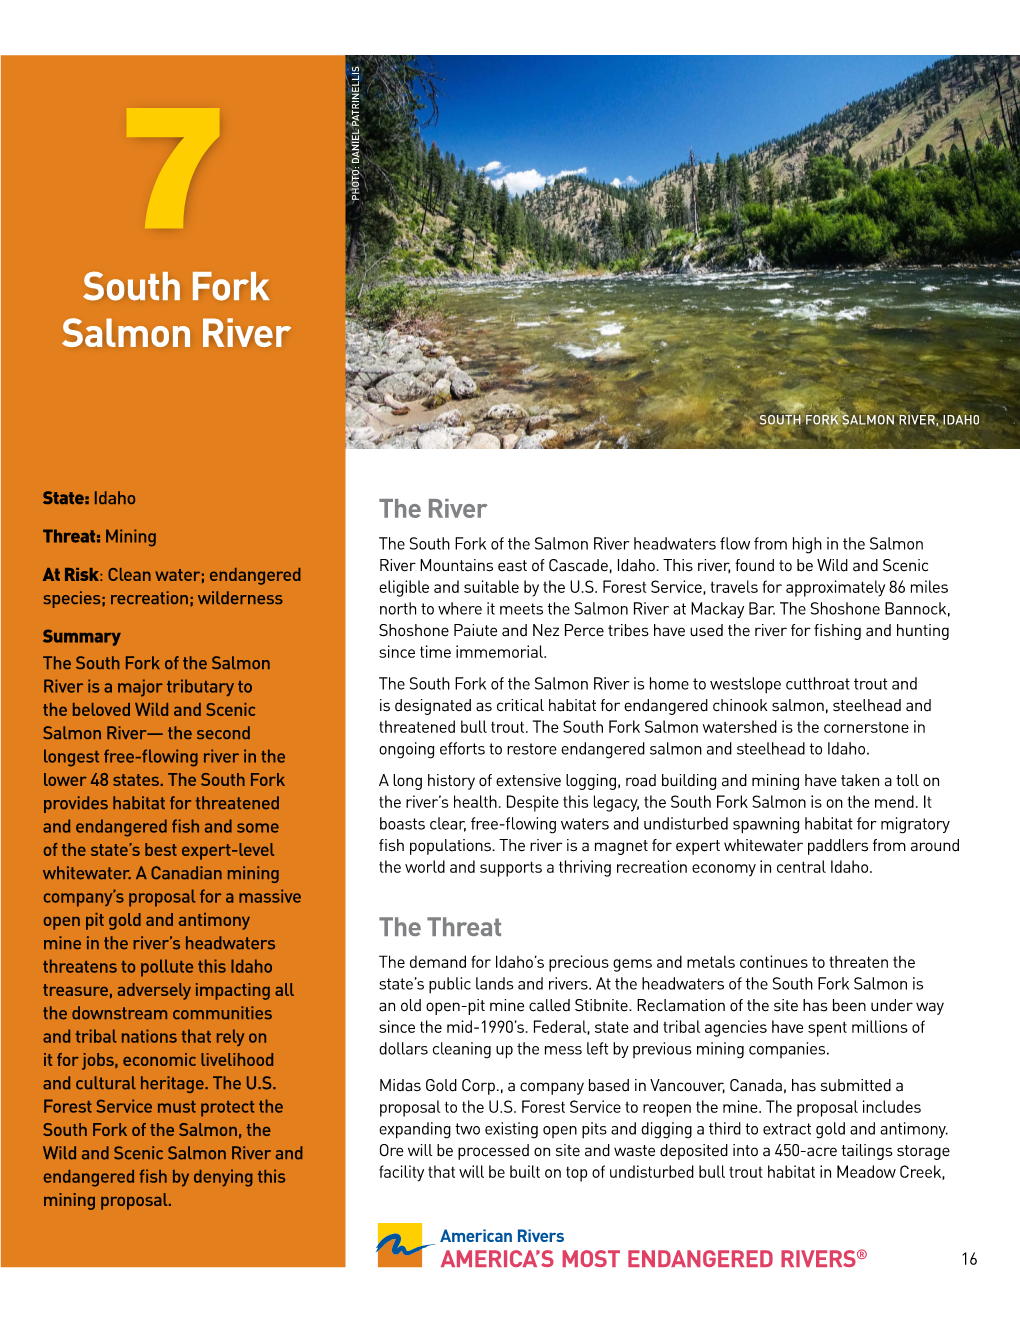 South Fork Salmon River